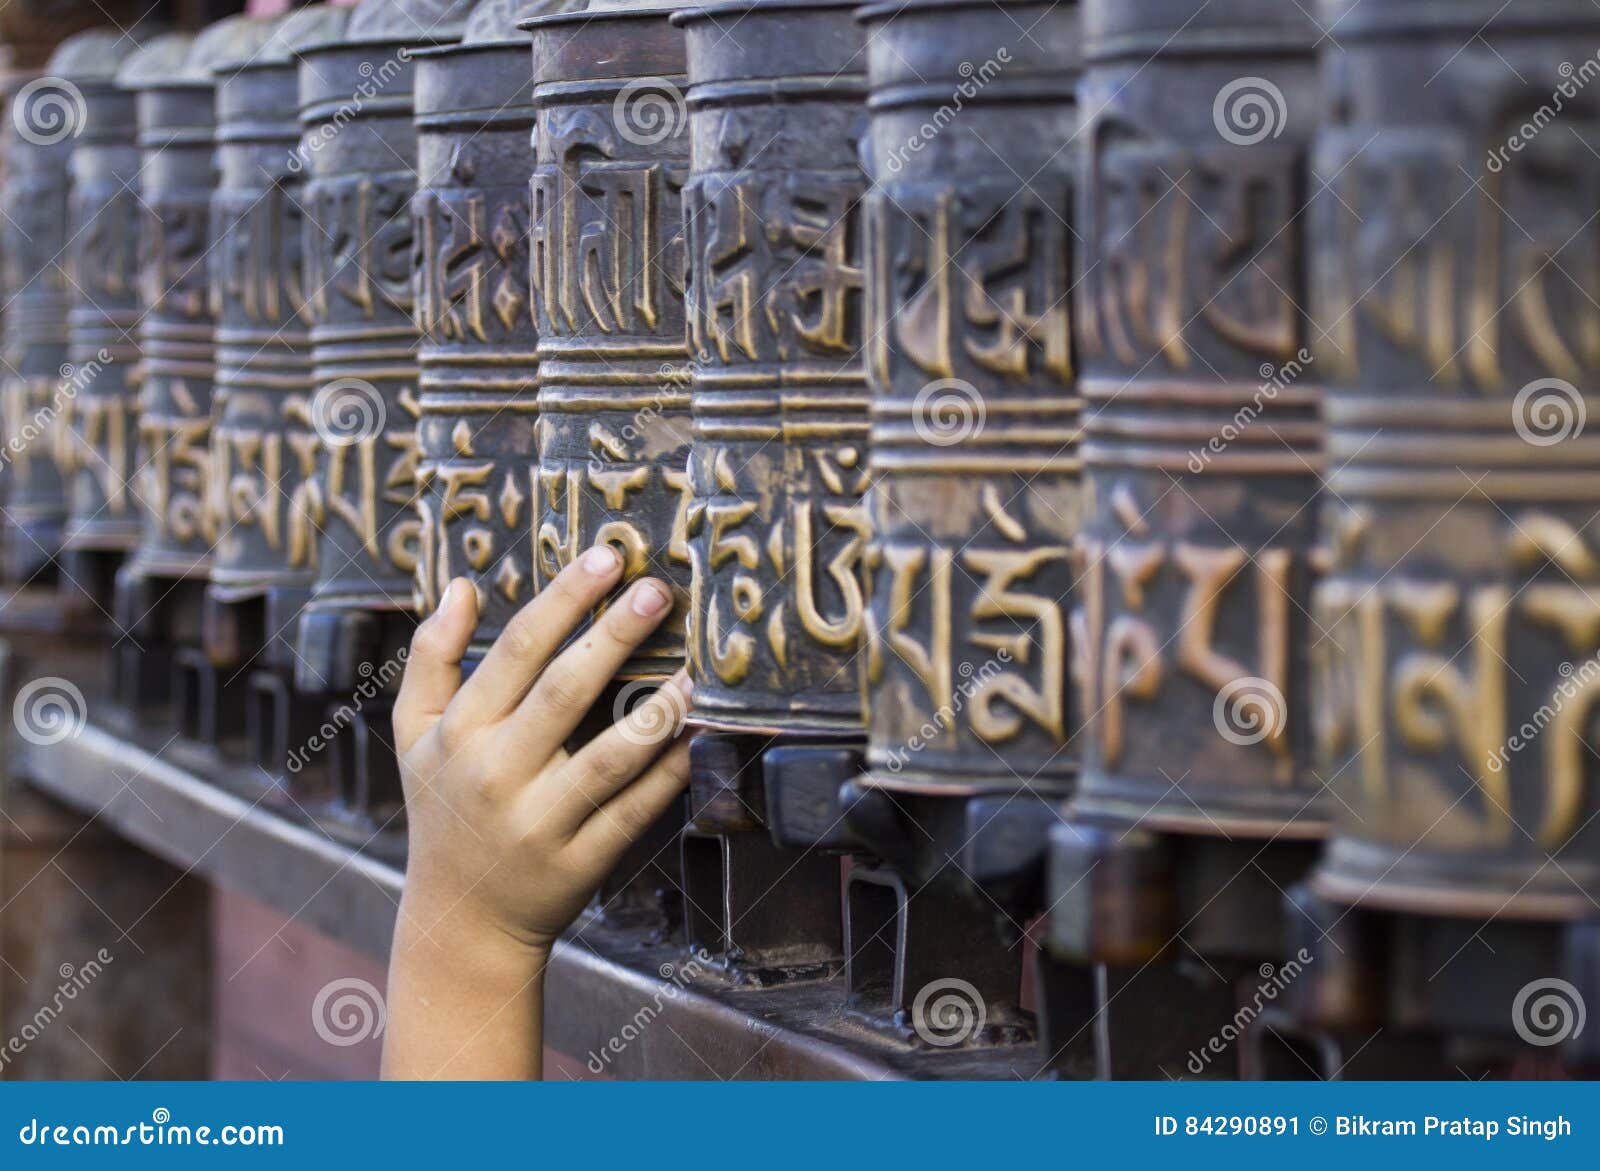 prayer-wheels-swayambhunath-hand-little-